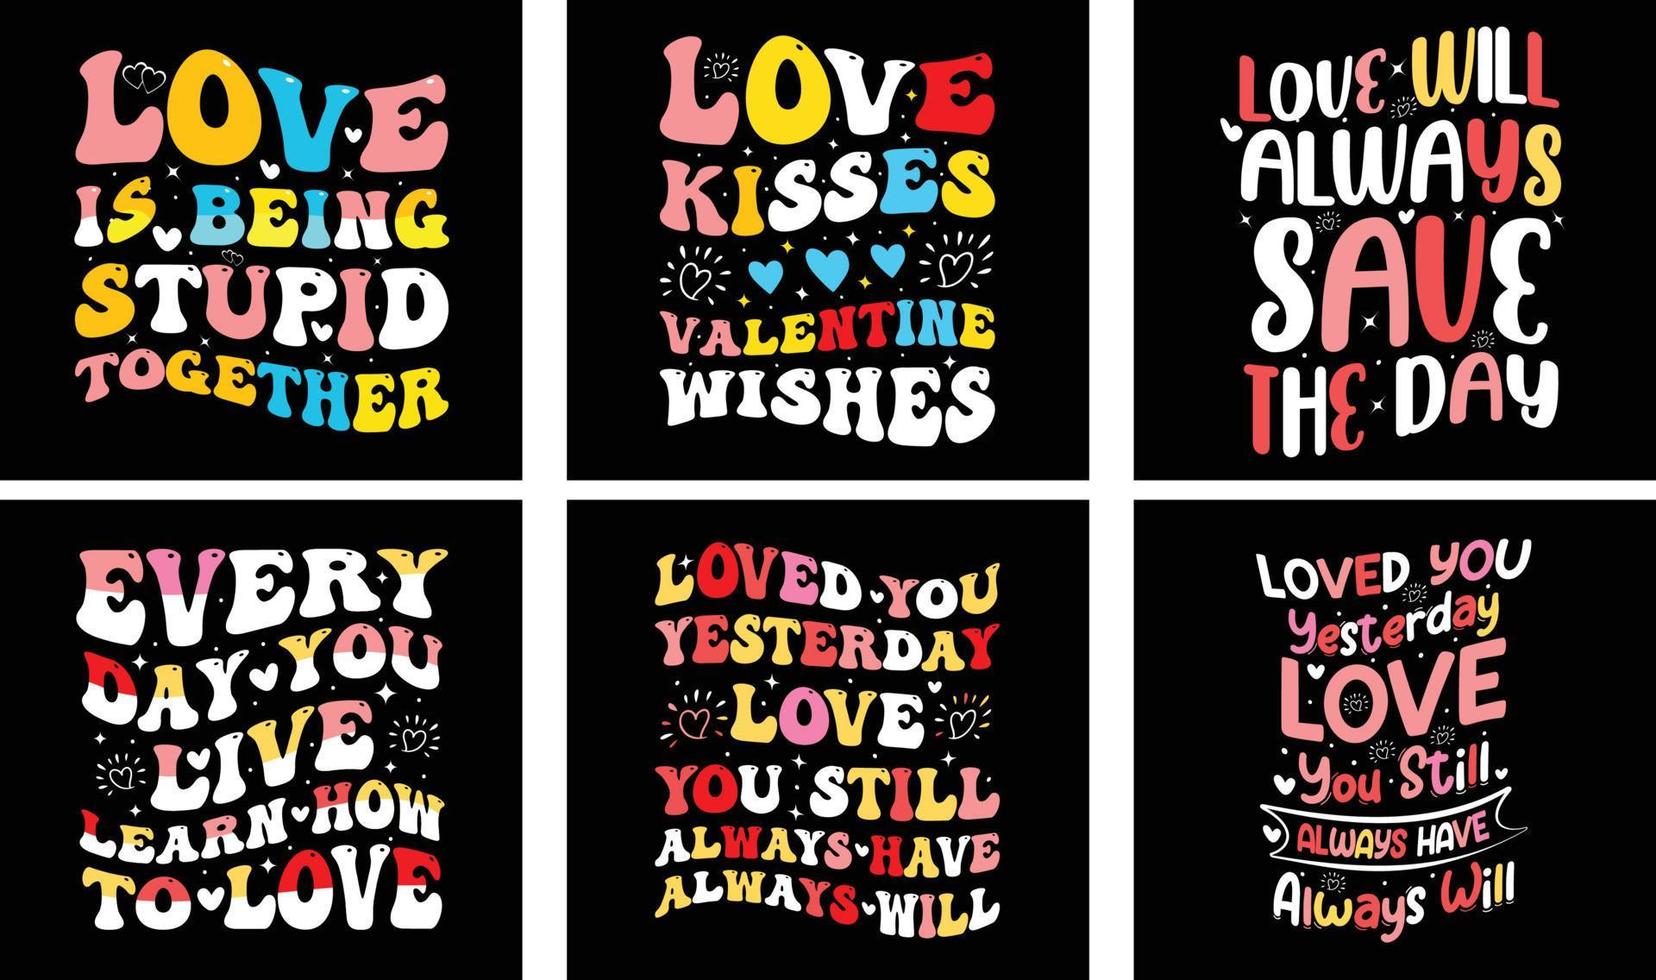 ensemble de conception de t-shirt de la saint-valentin. graphiques vectoriels de la Saint-Valentin. conception de t-shirt de typographie de la saint-valentin vecteur